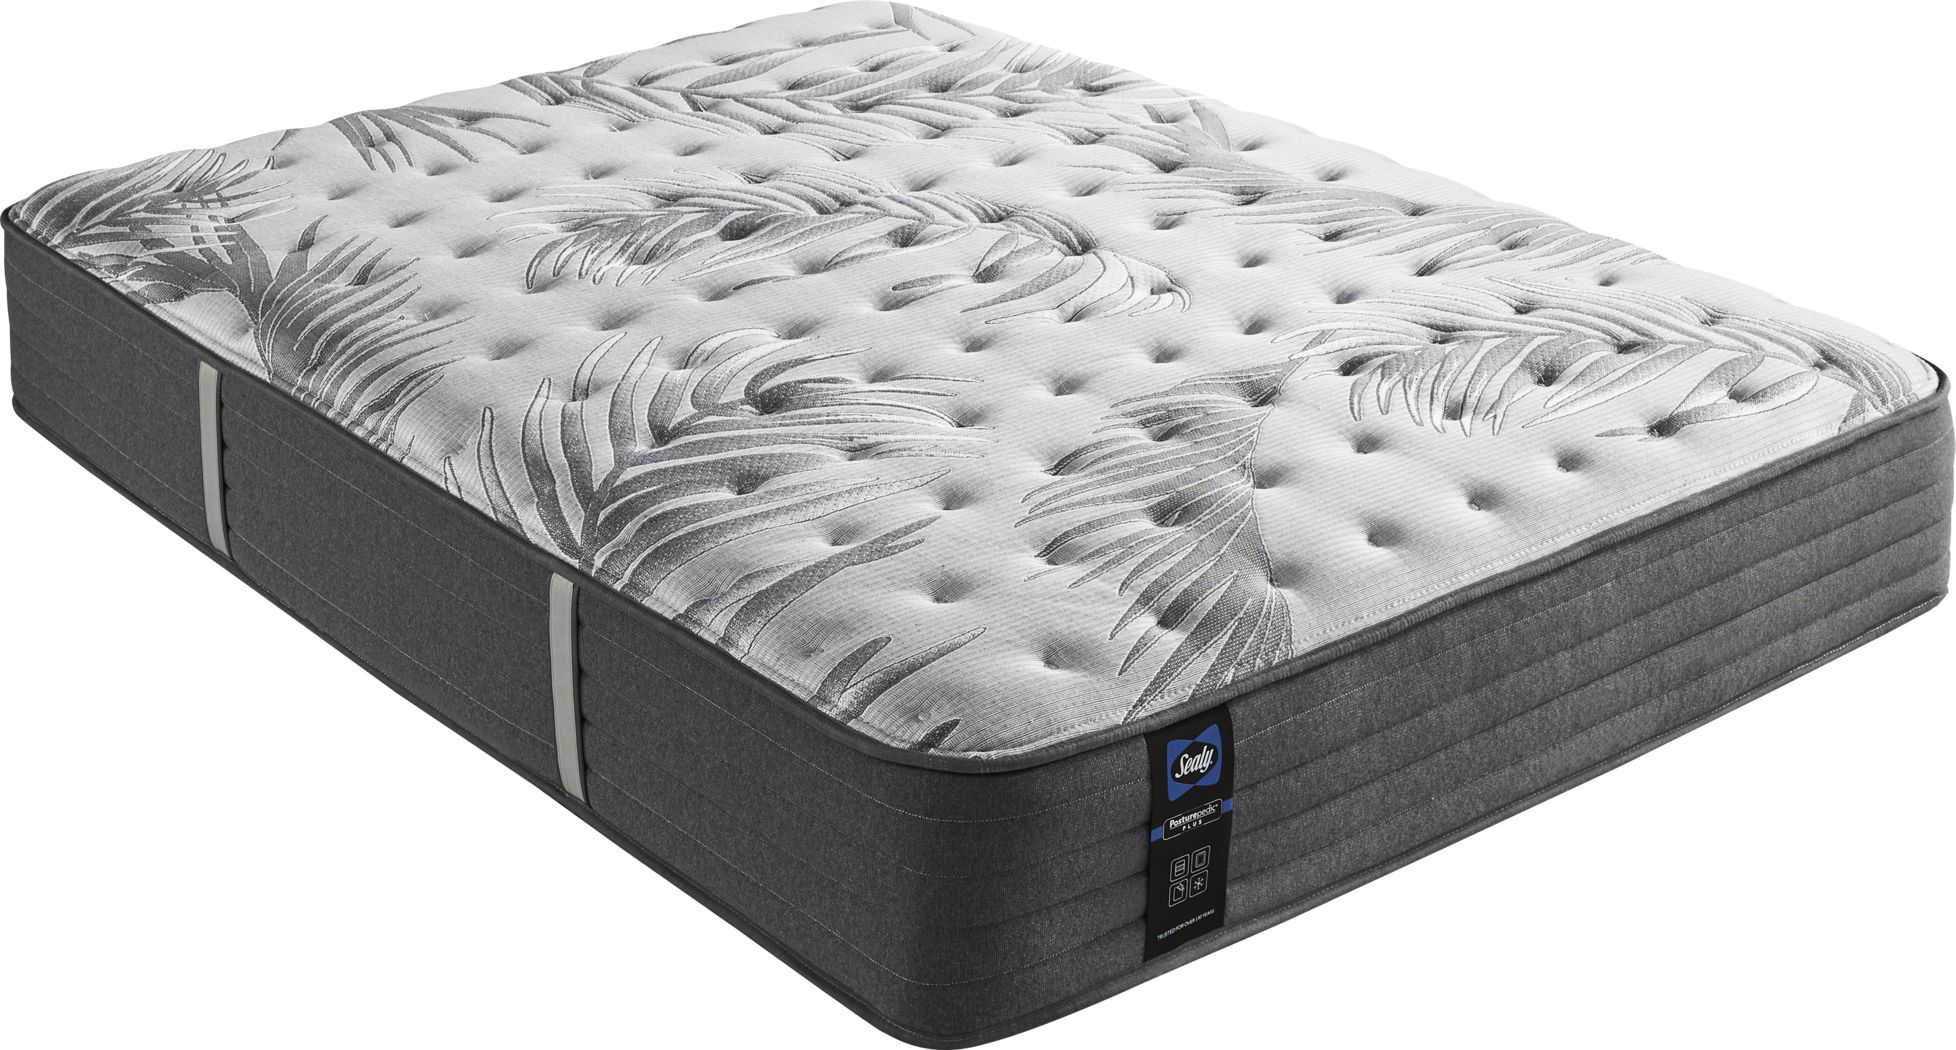 queen size sealy beautyrest mattress